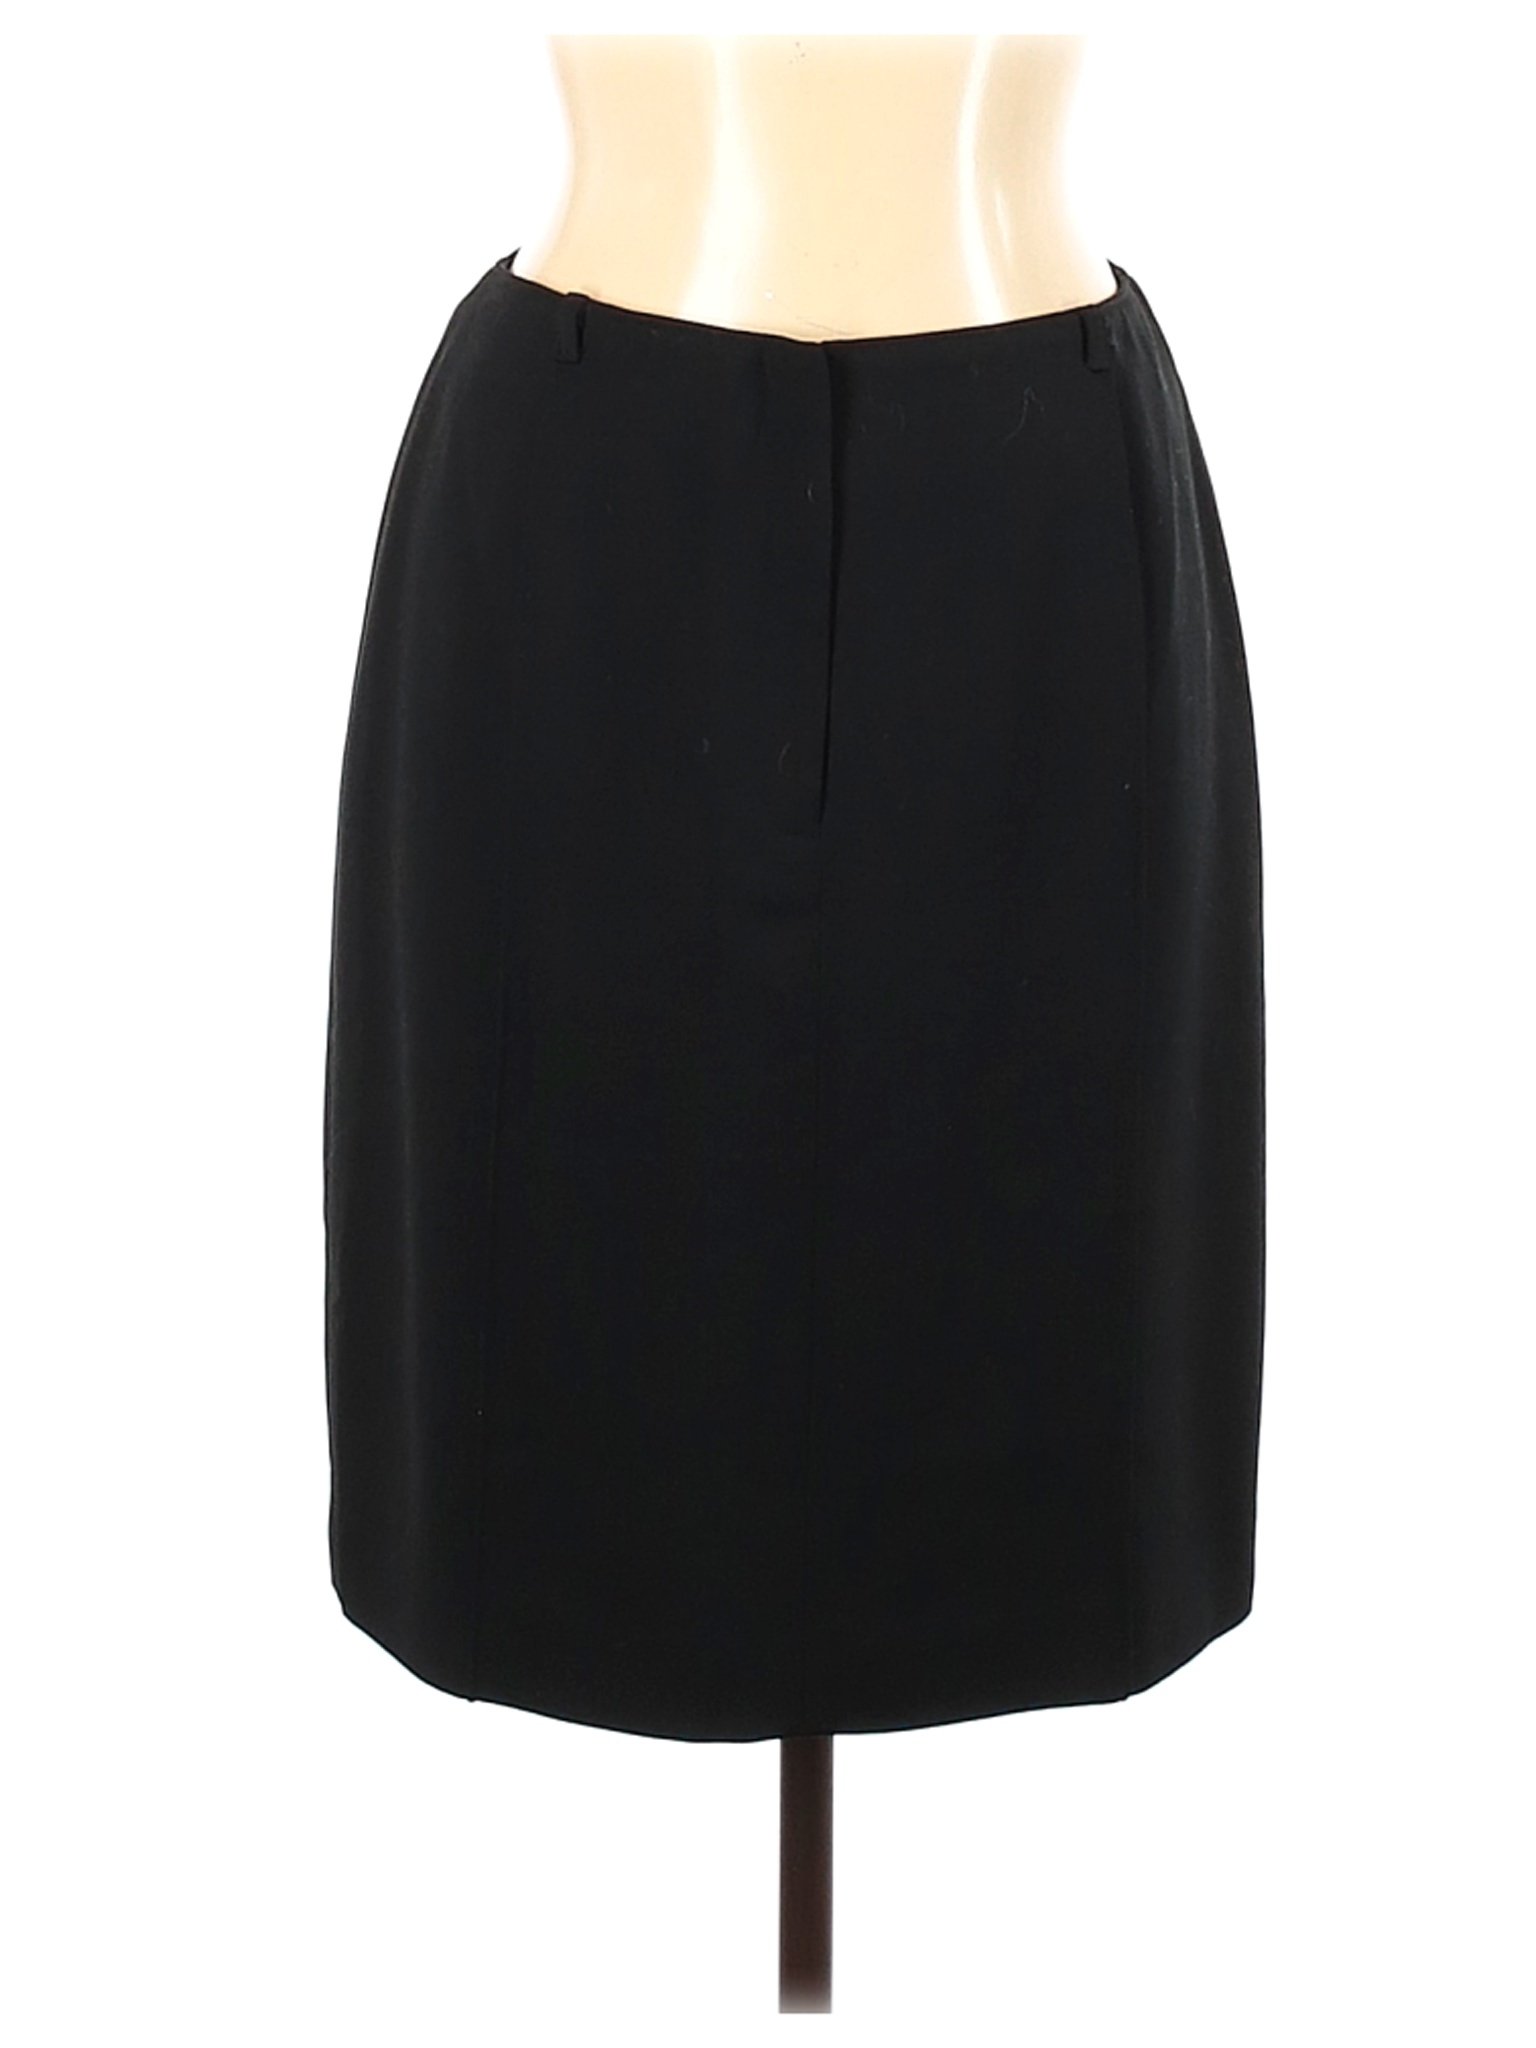 Jones New York Women Black Wool Skirt 10 | eBay